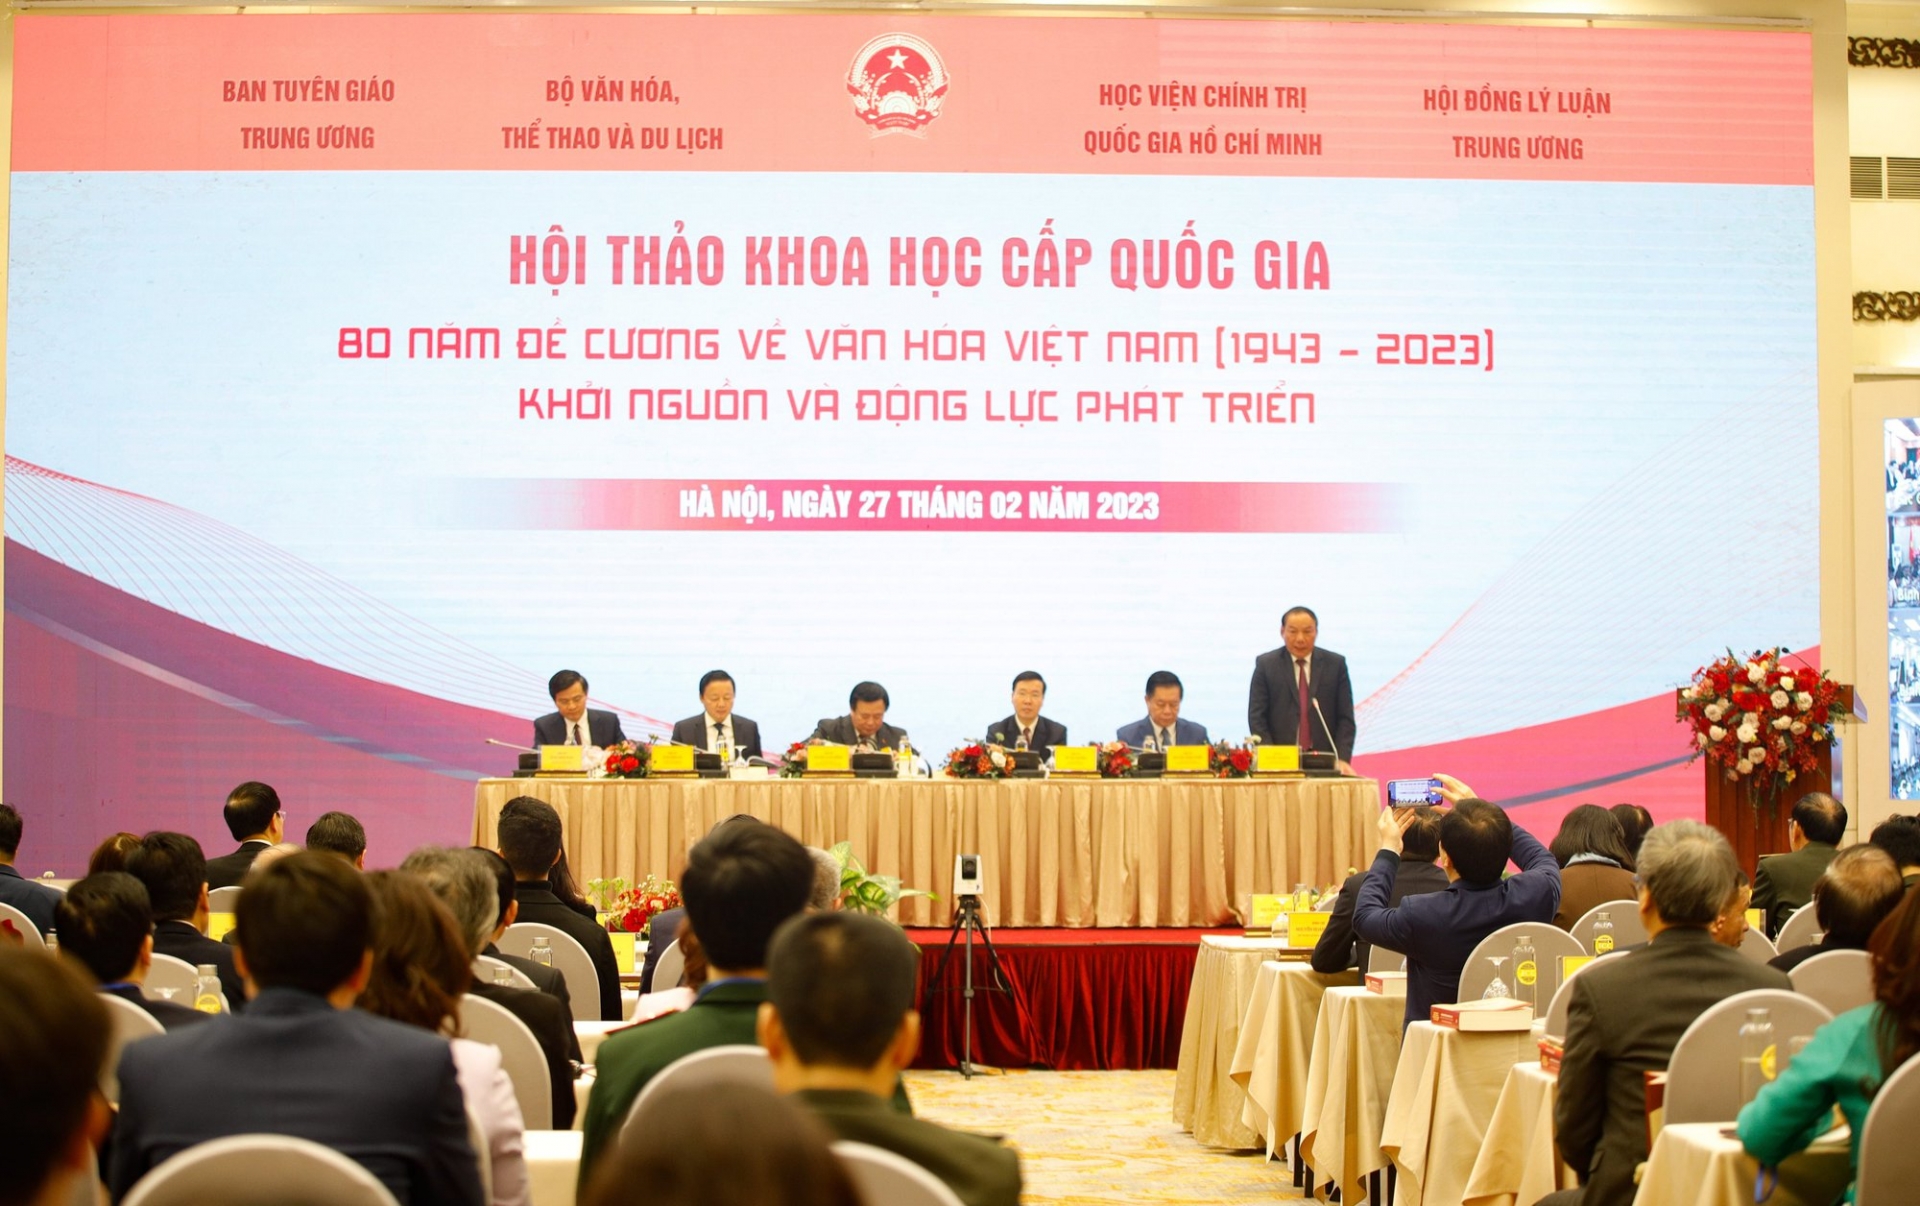 纪念《越南文化纲要》颁布80周年（1943-2023）图片展开幕式于2月27日上午在河内国际会议中心隆重举行。图自baochinhphu.vn